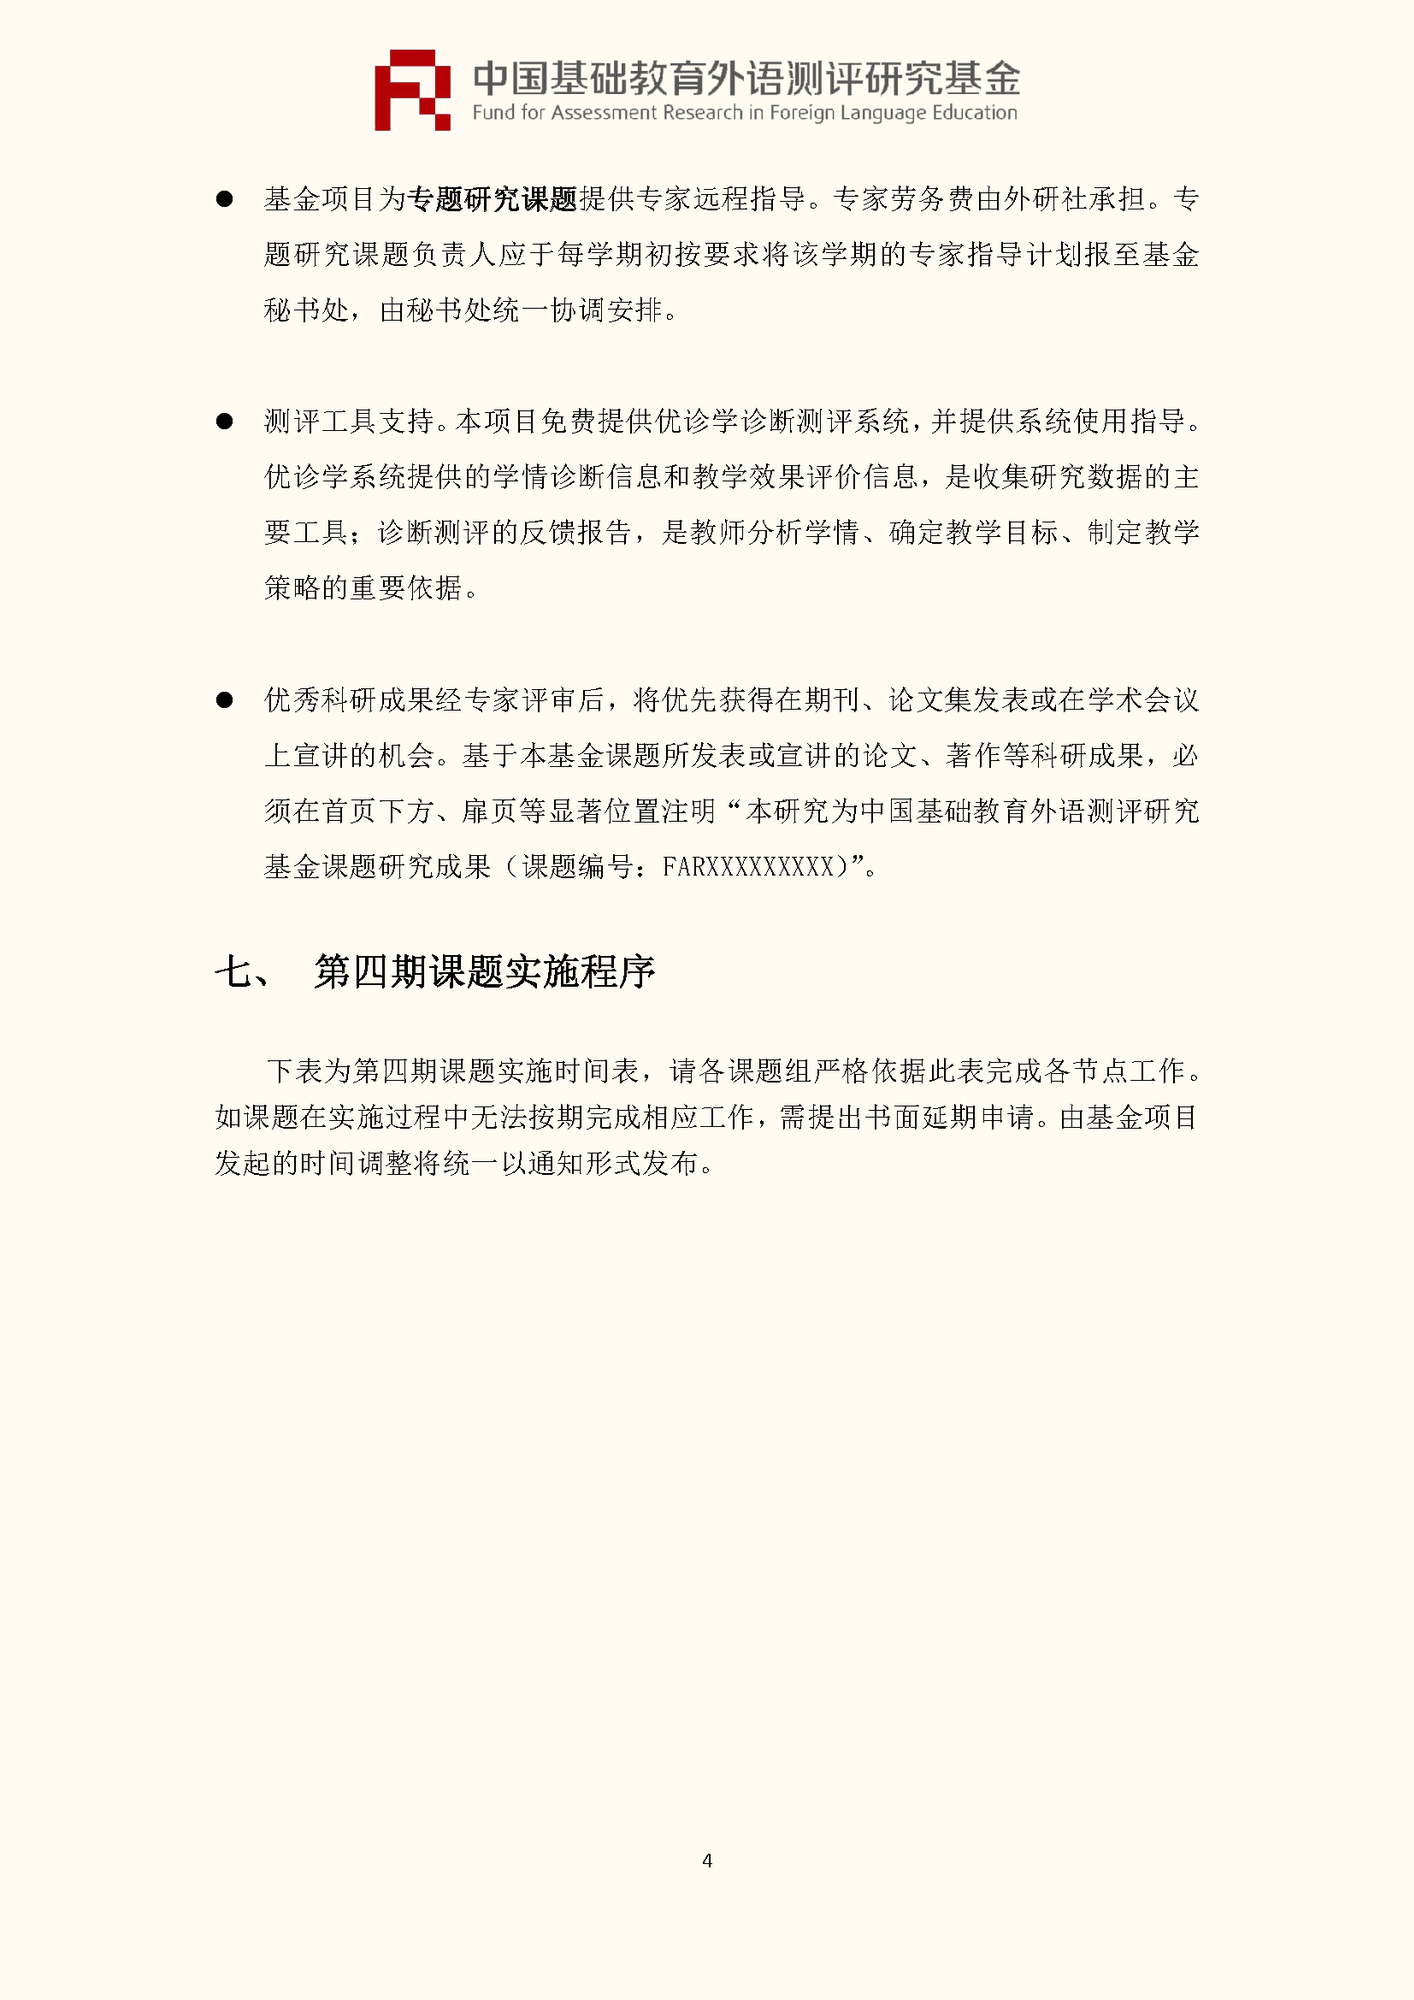 0520-”中国基础教育外语测评研究基金“项目第四期课题申报指南_页面_06